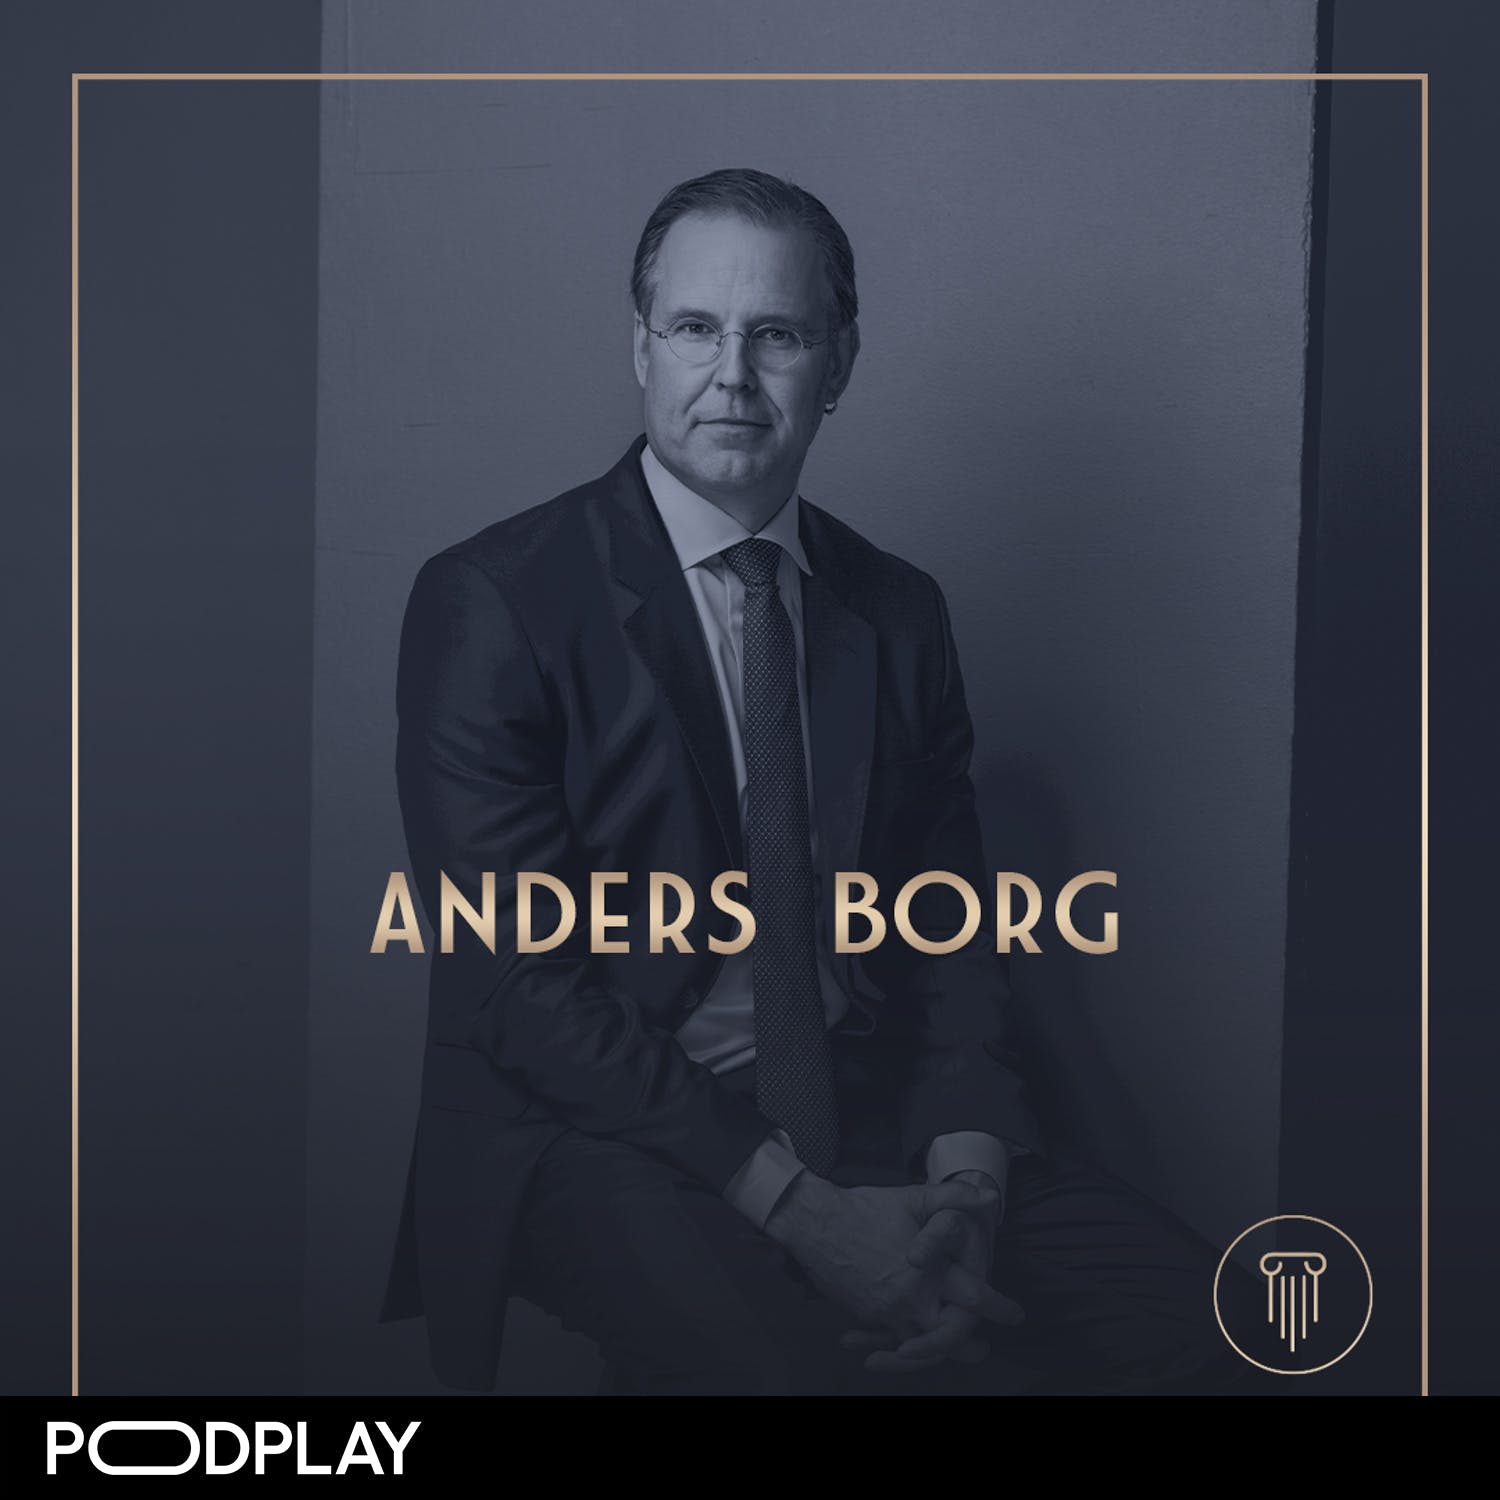 336. Anders Borg - Då blir nästa finanskris..., Original